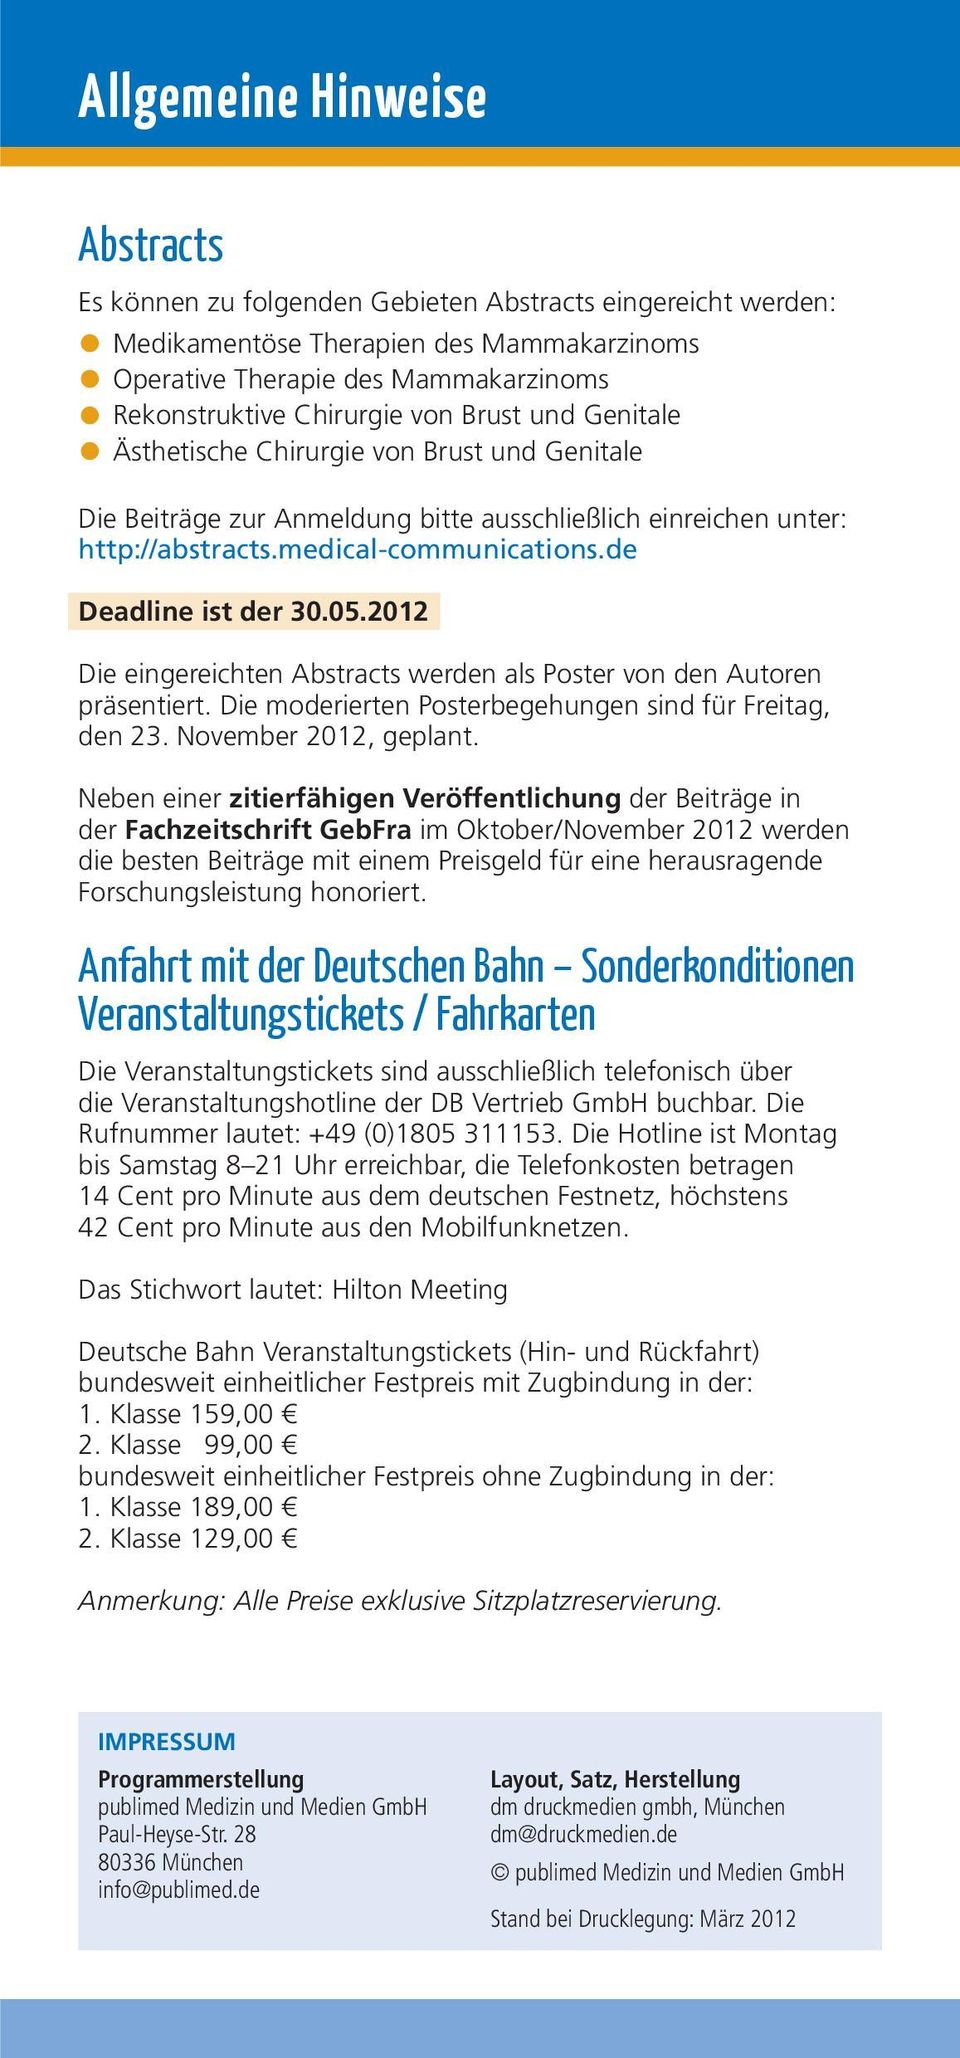 2012 Die eingereichten Abstracts werden als Poster von den Autoren präsentiert. Die moderierten Posterbegehungen sind für Freitag, den 23. November 2012, geplant.